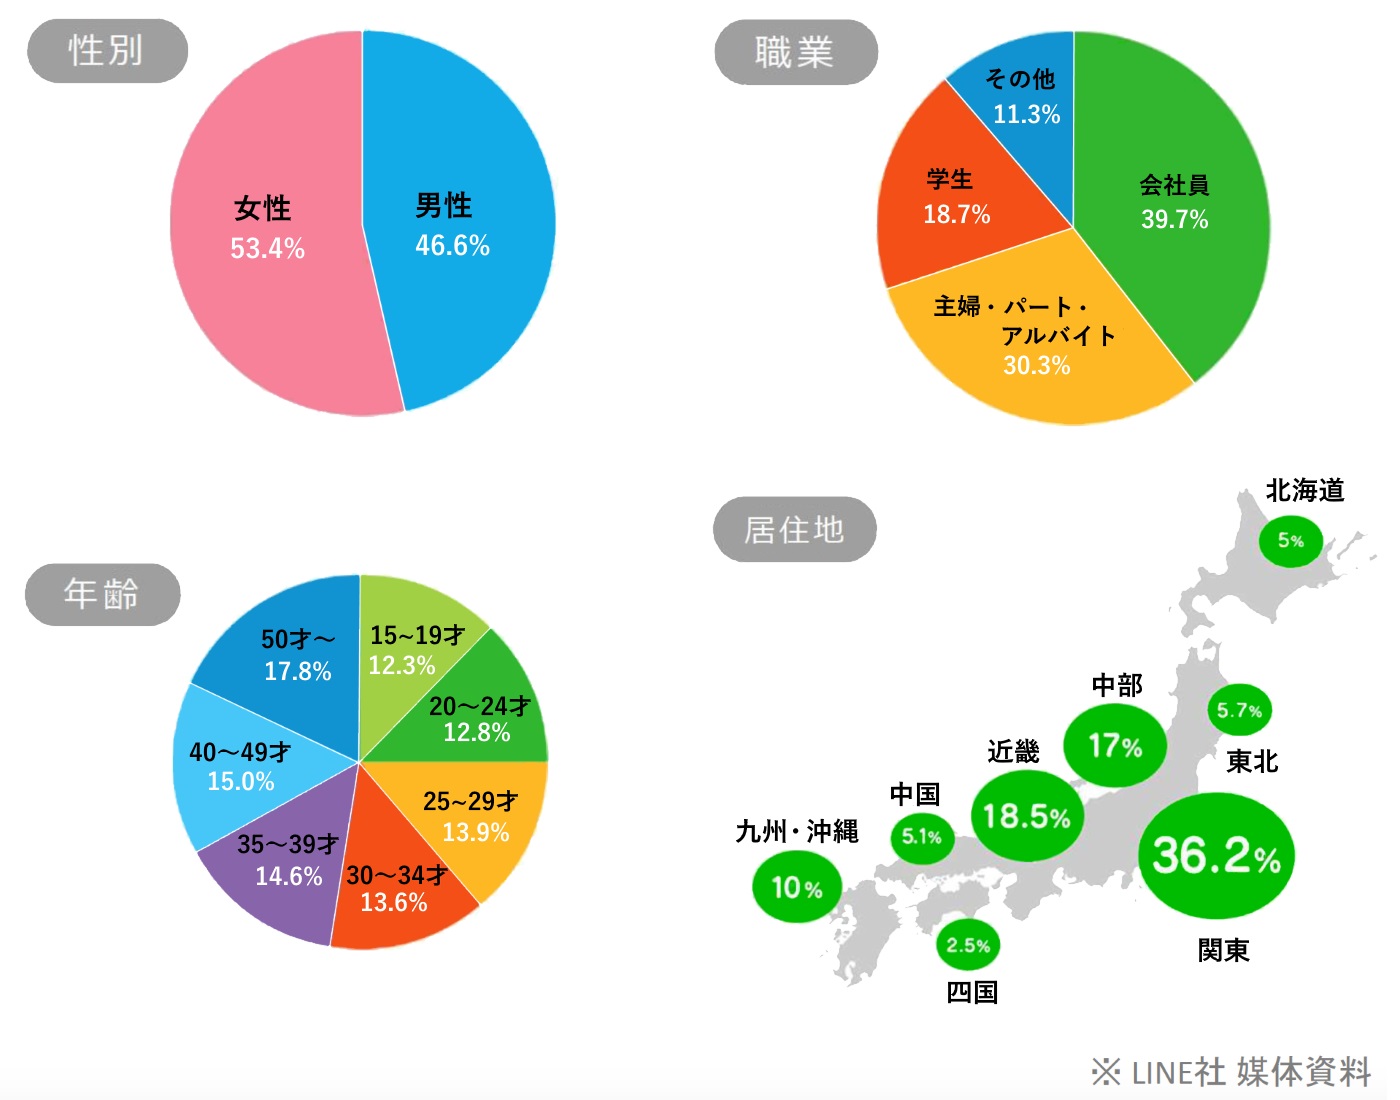 性別・年代・職業・居住地のすべてにおいて、LINEは日本の人口分布をカバー